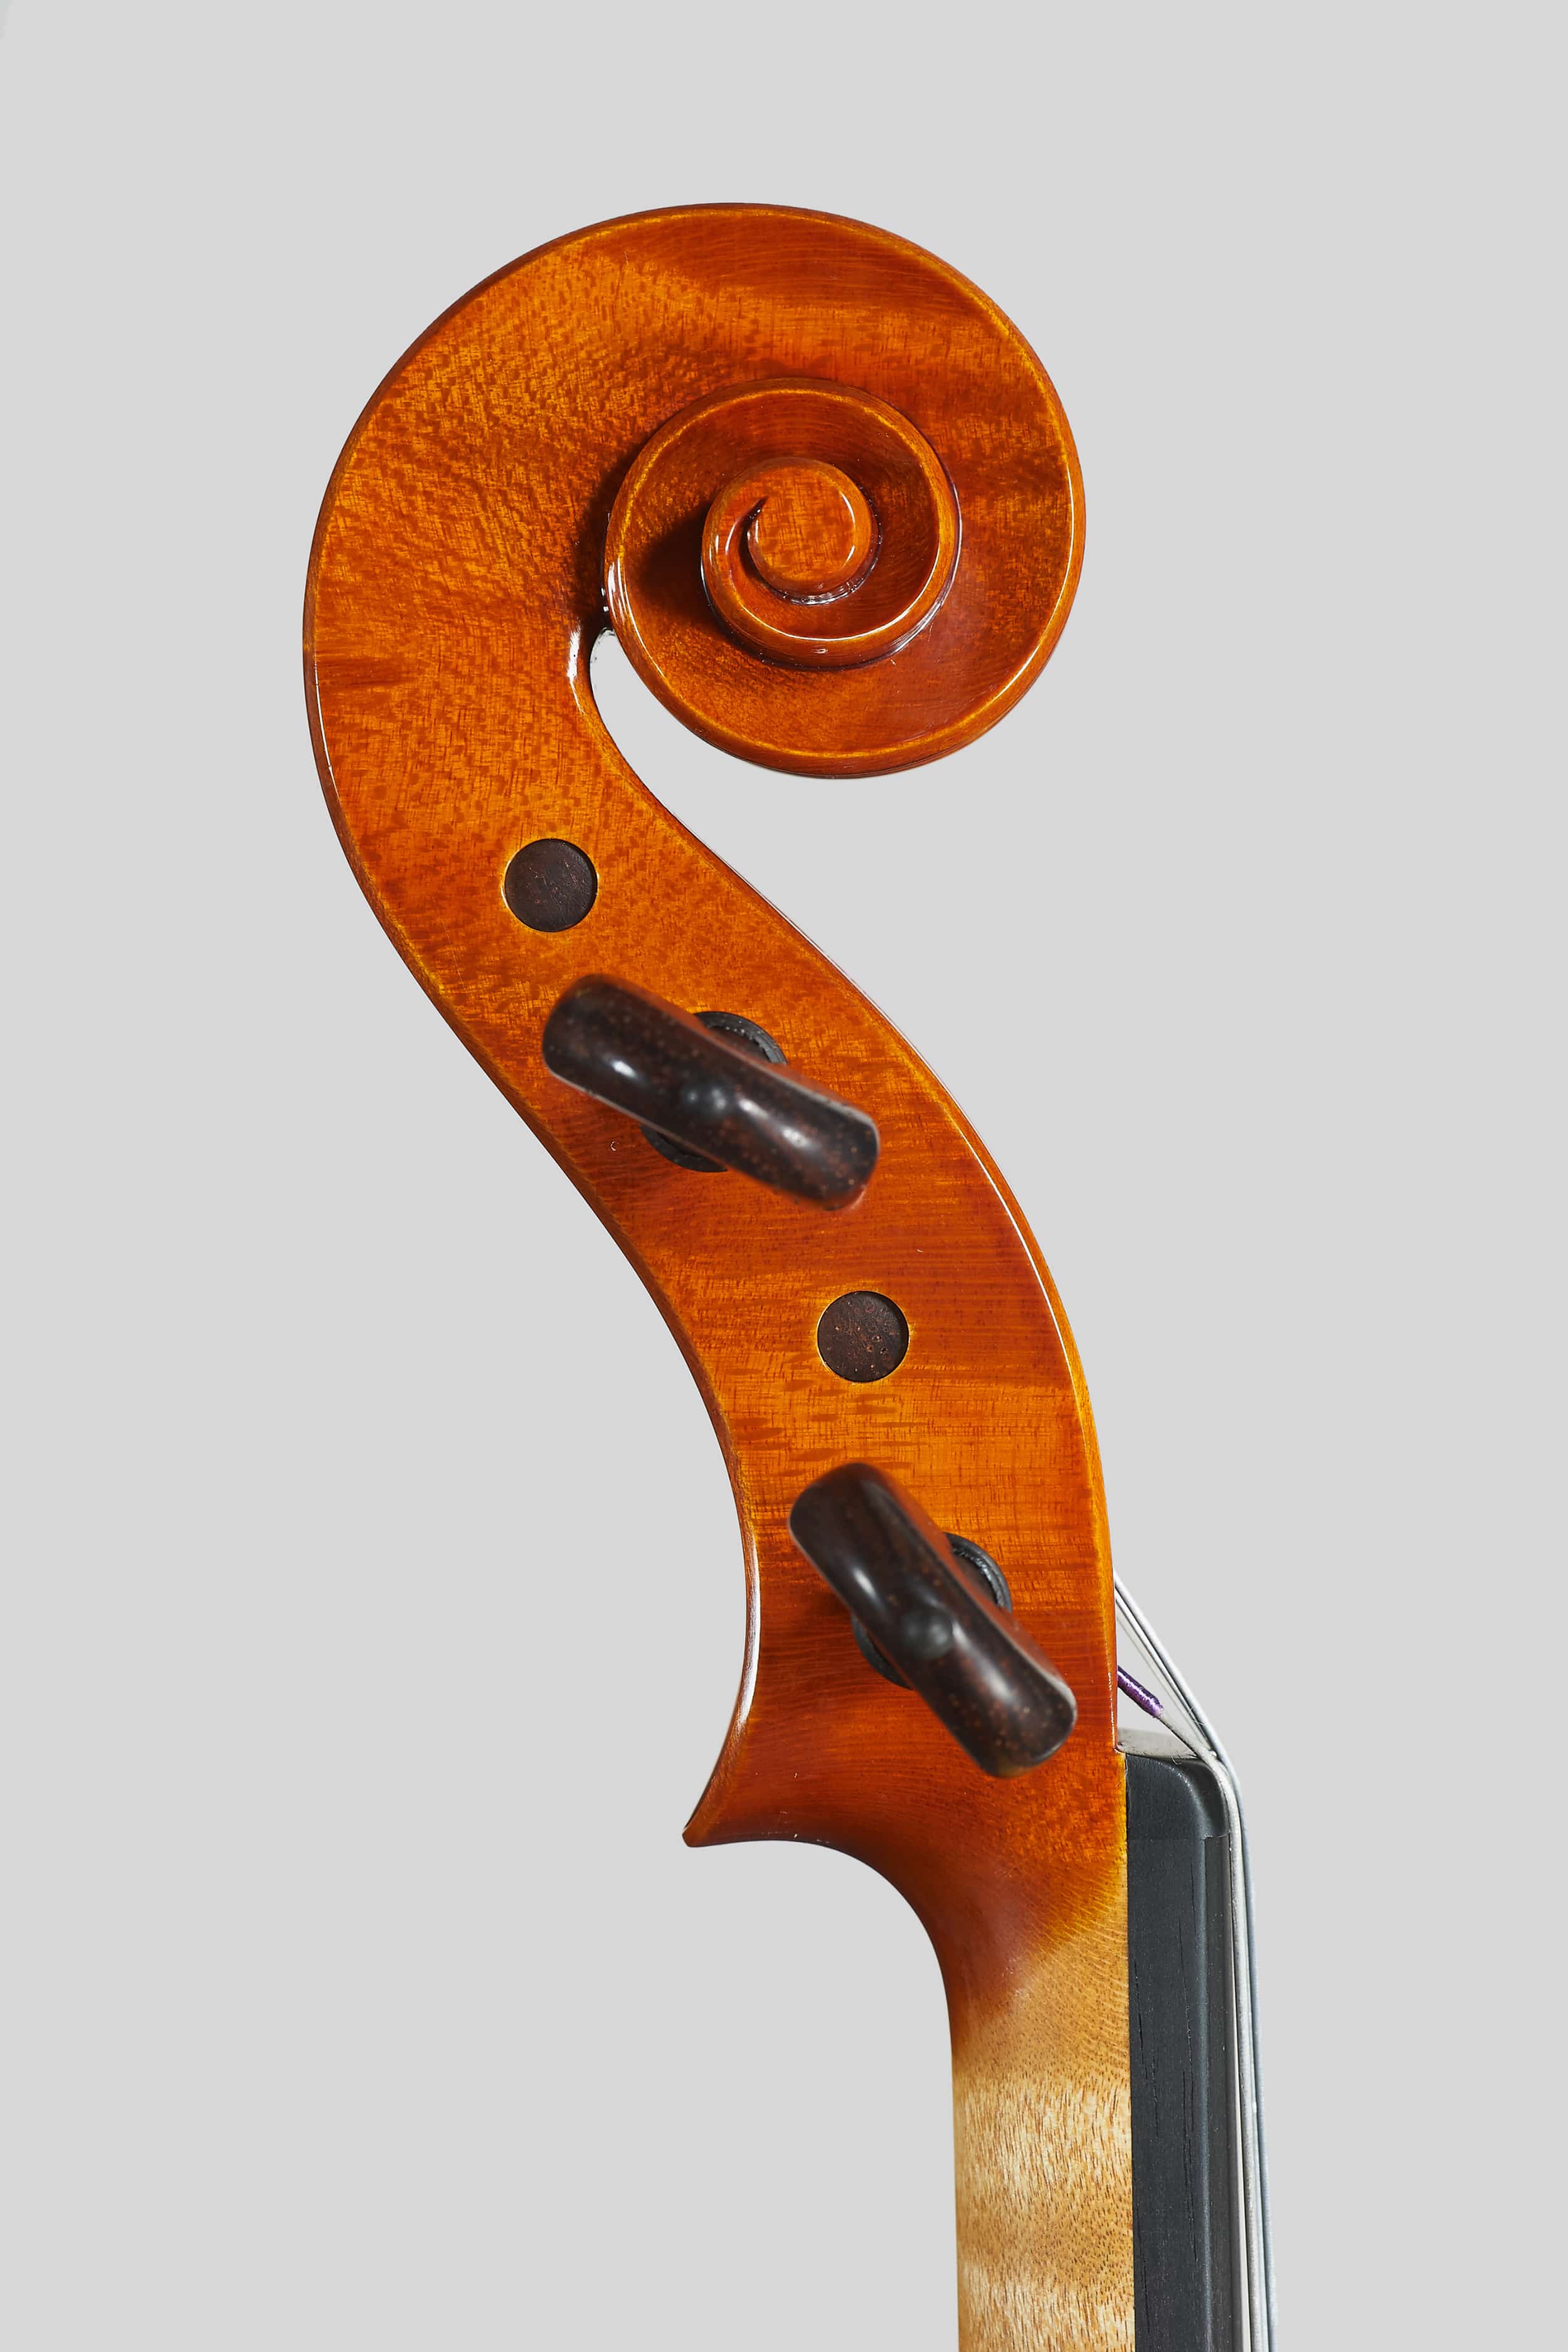 Anno 2016 – Violino modello A. Stradivari “Soil” 1714 - Testa sinistra